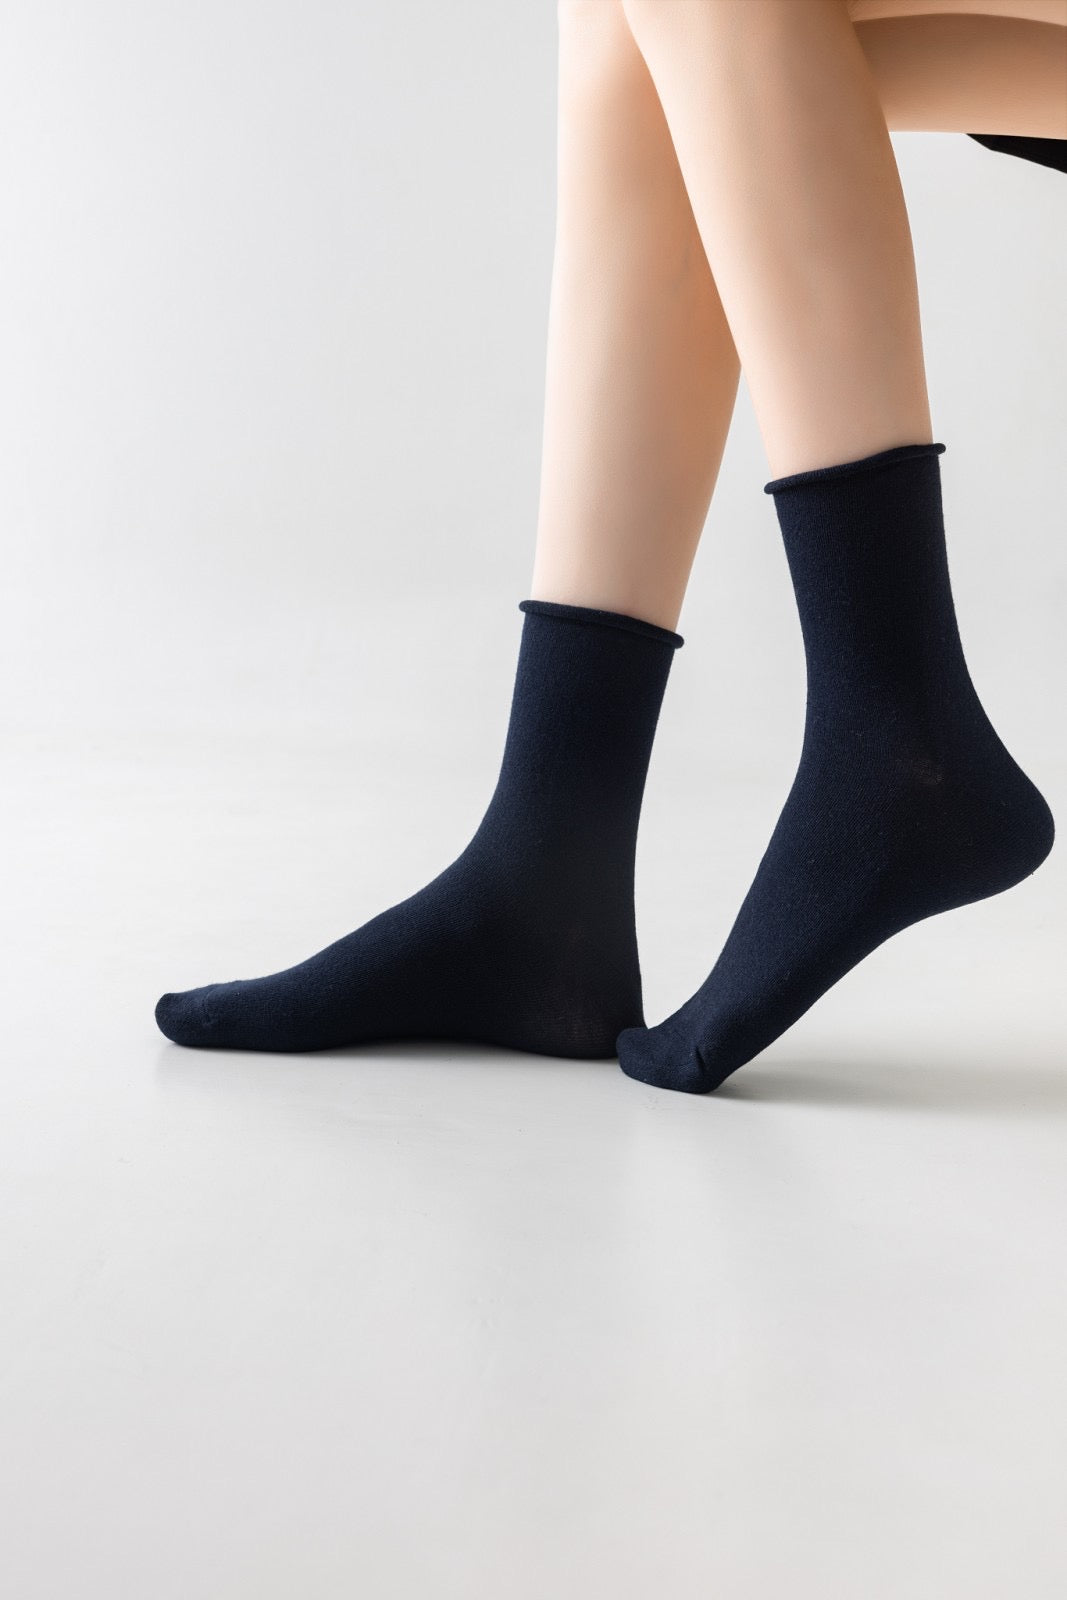 6 pari ženskih antibakterijskih čarapa brez gume 5780 - TANKE